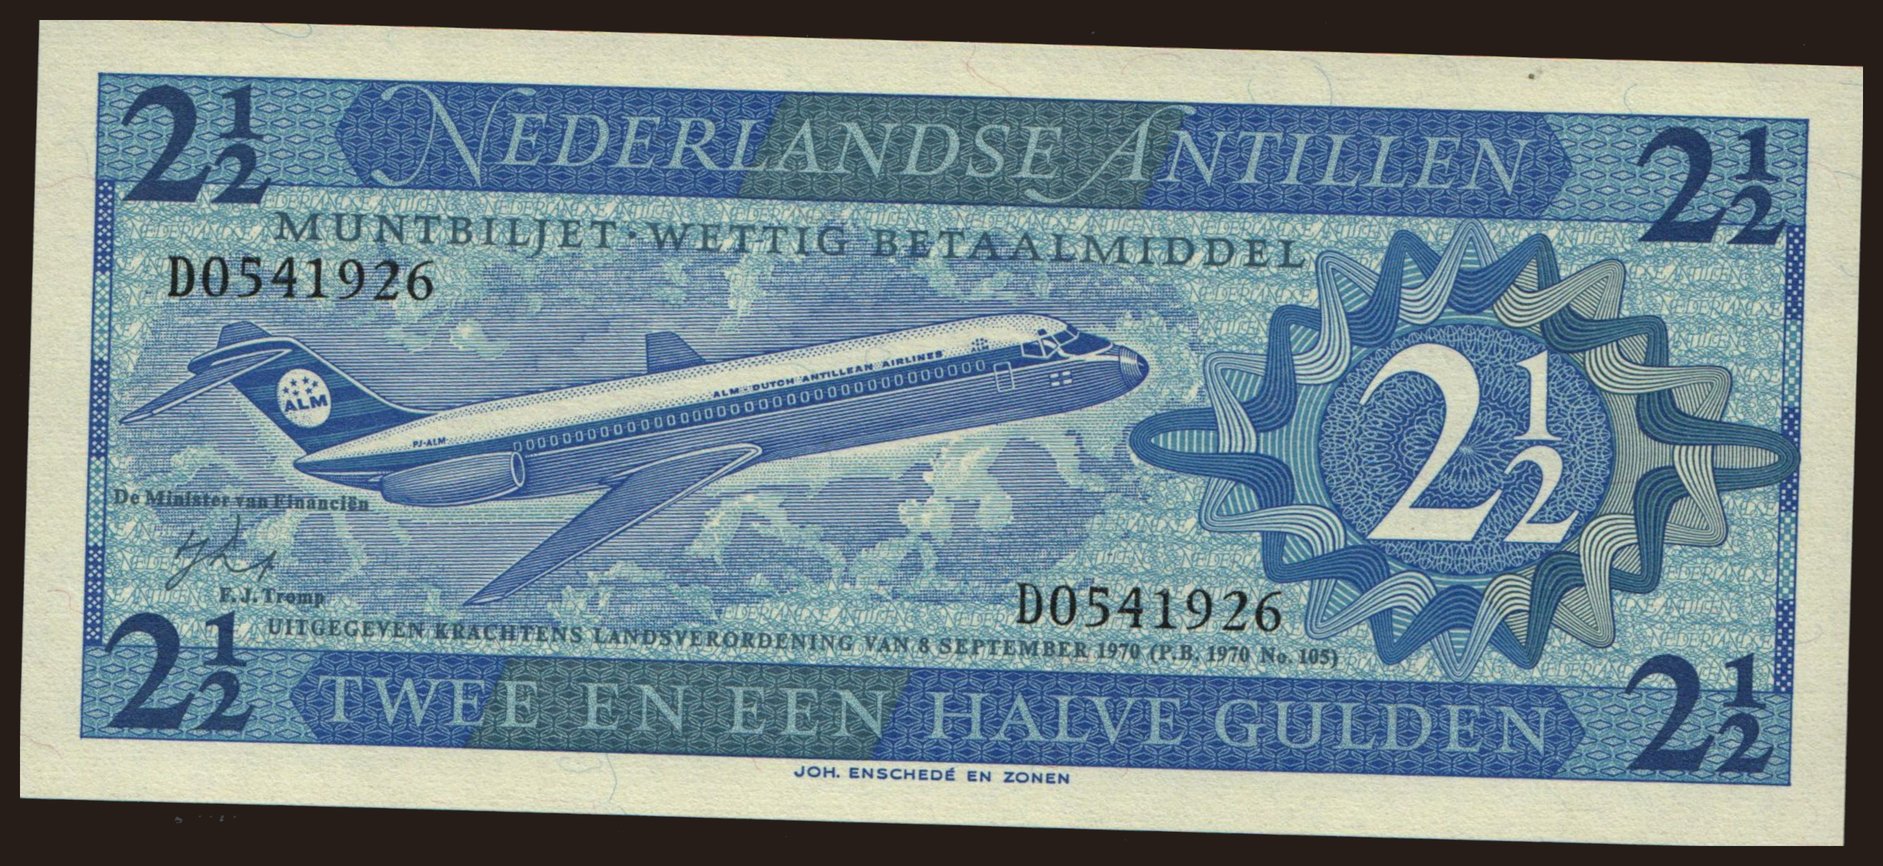 2 1/2 gulden, 1970